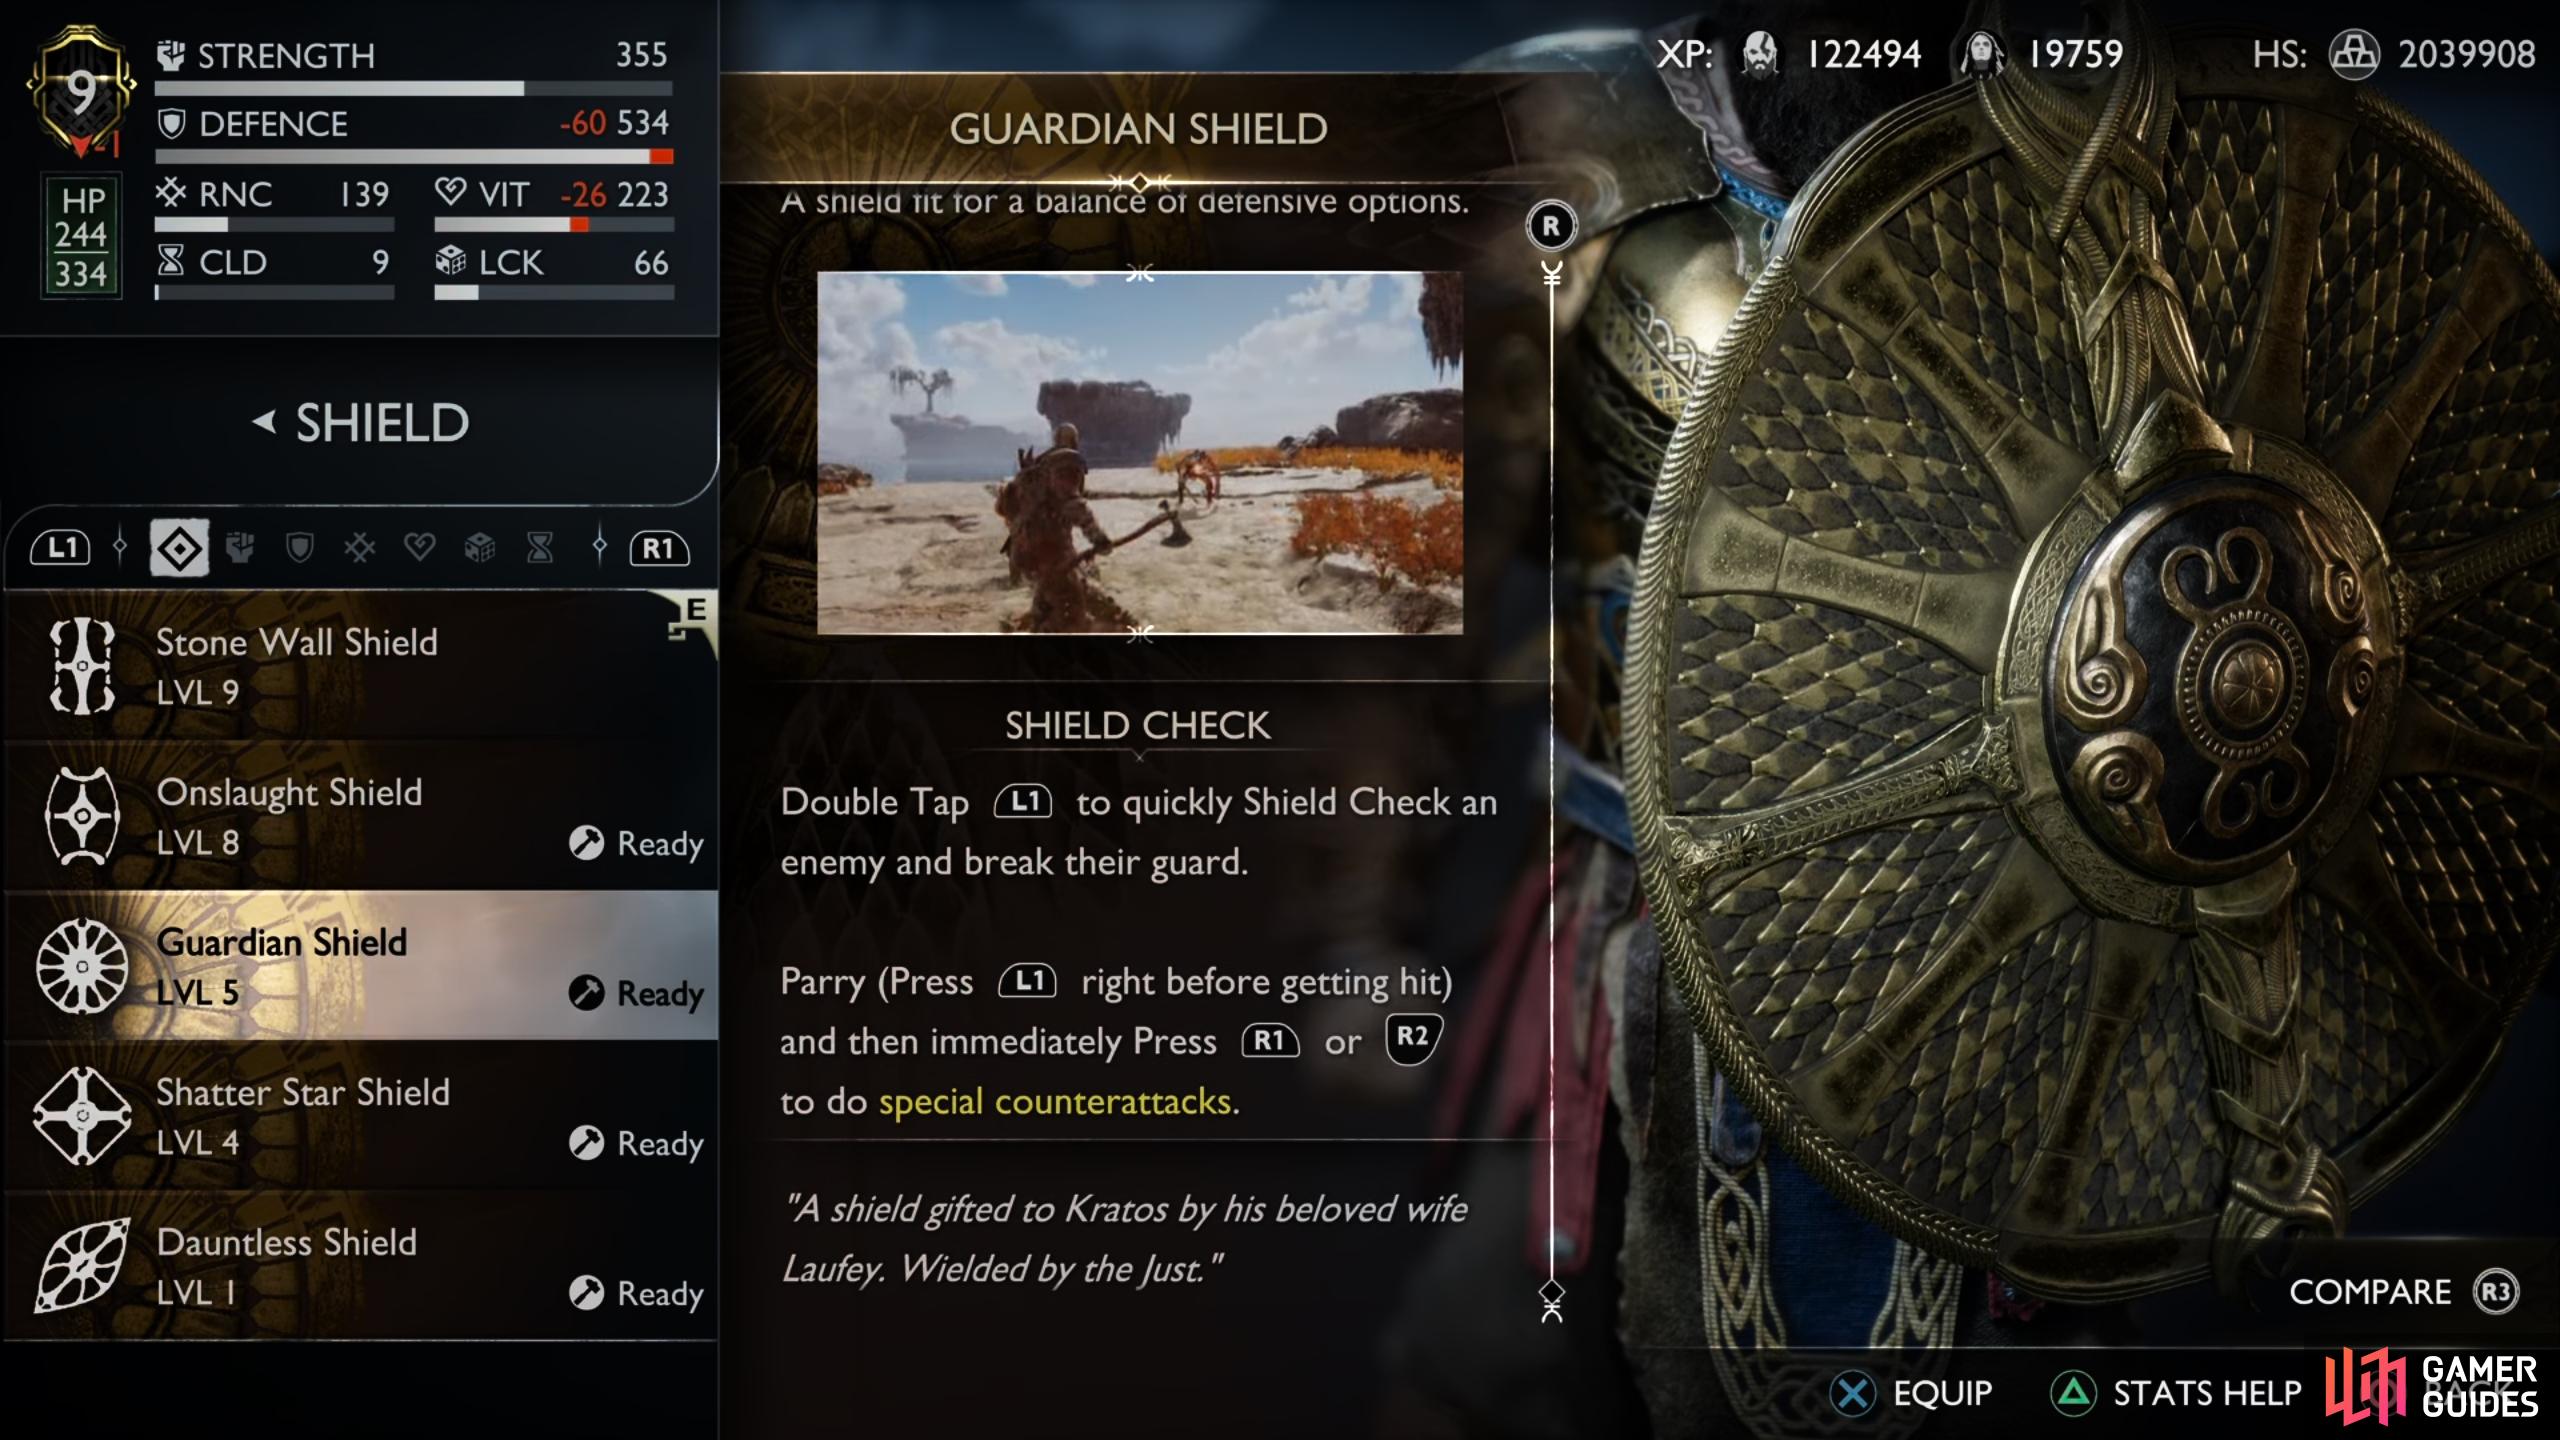 The Guardian Shield description.